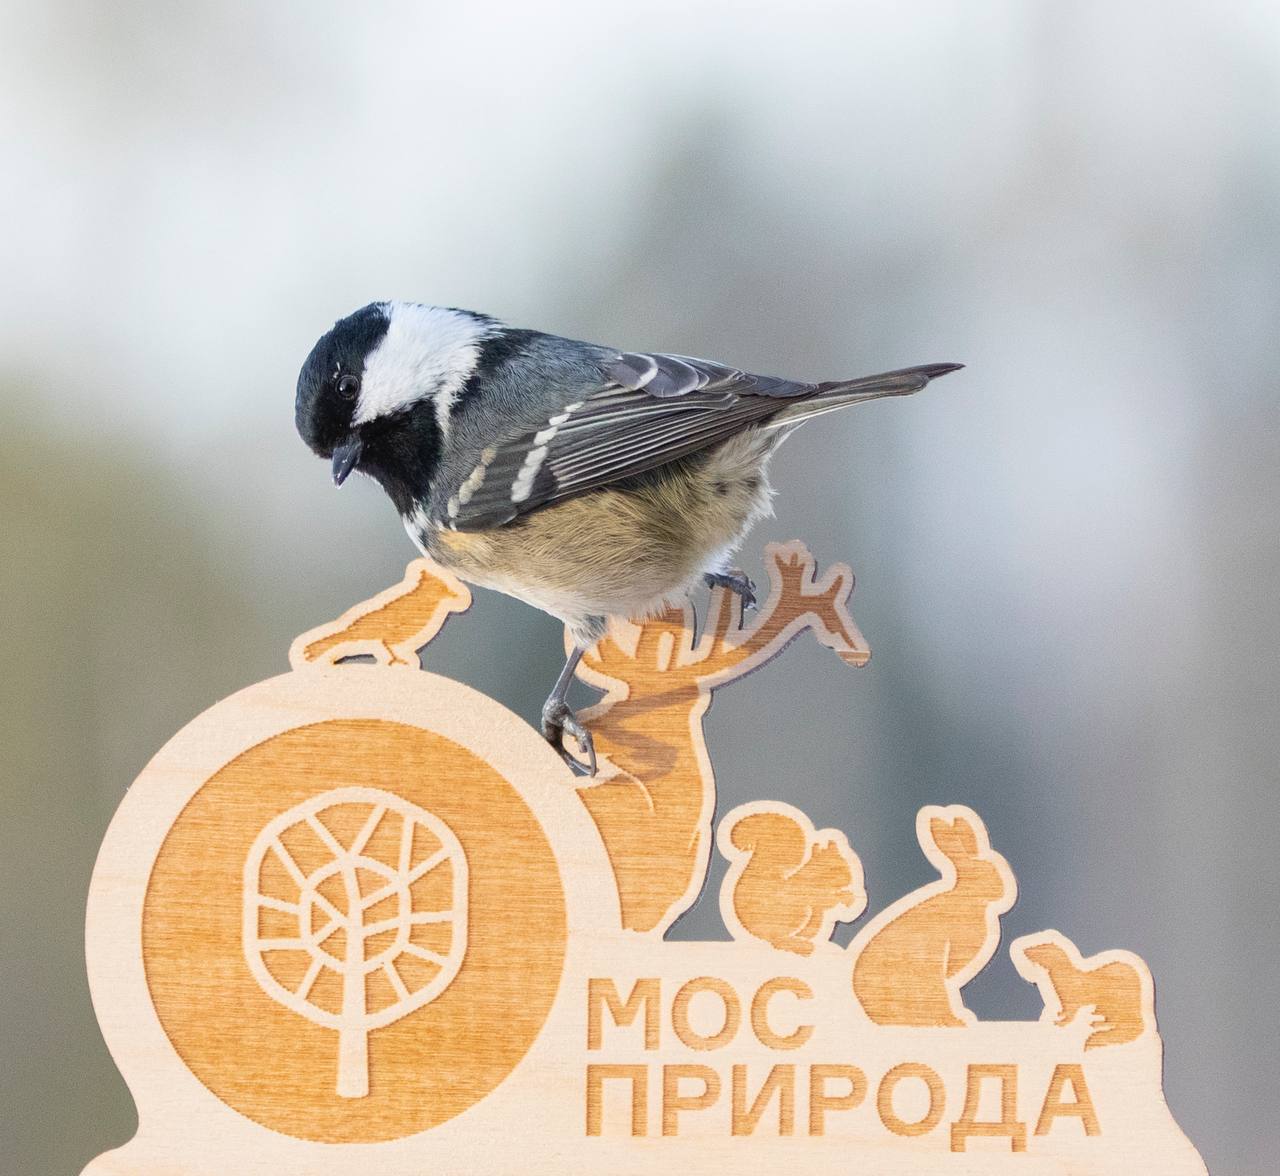 Пернатый аудиогид: Мосприрода запускает проект по определению видов птиц по голосам